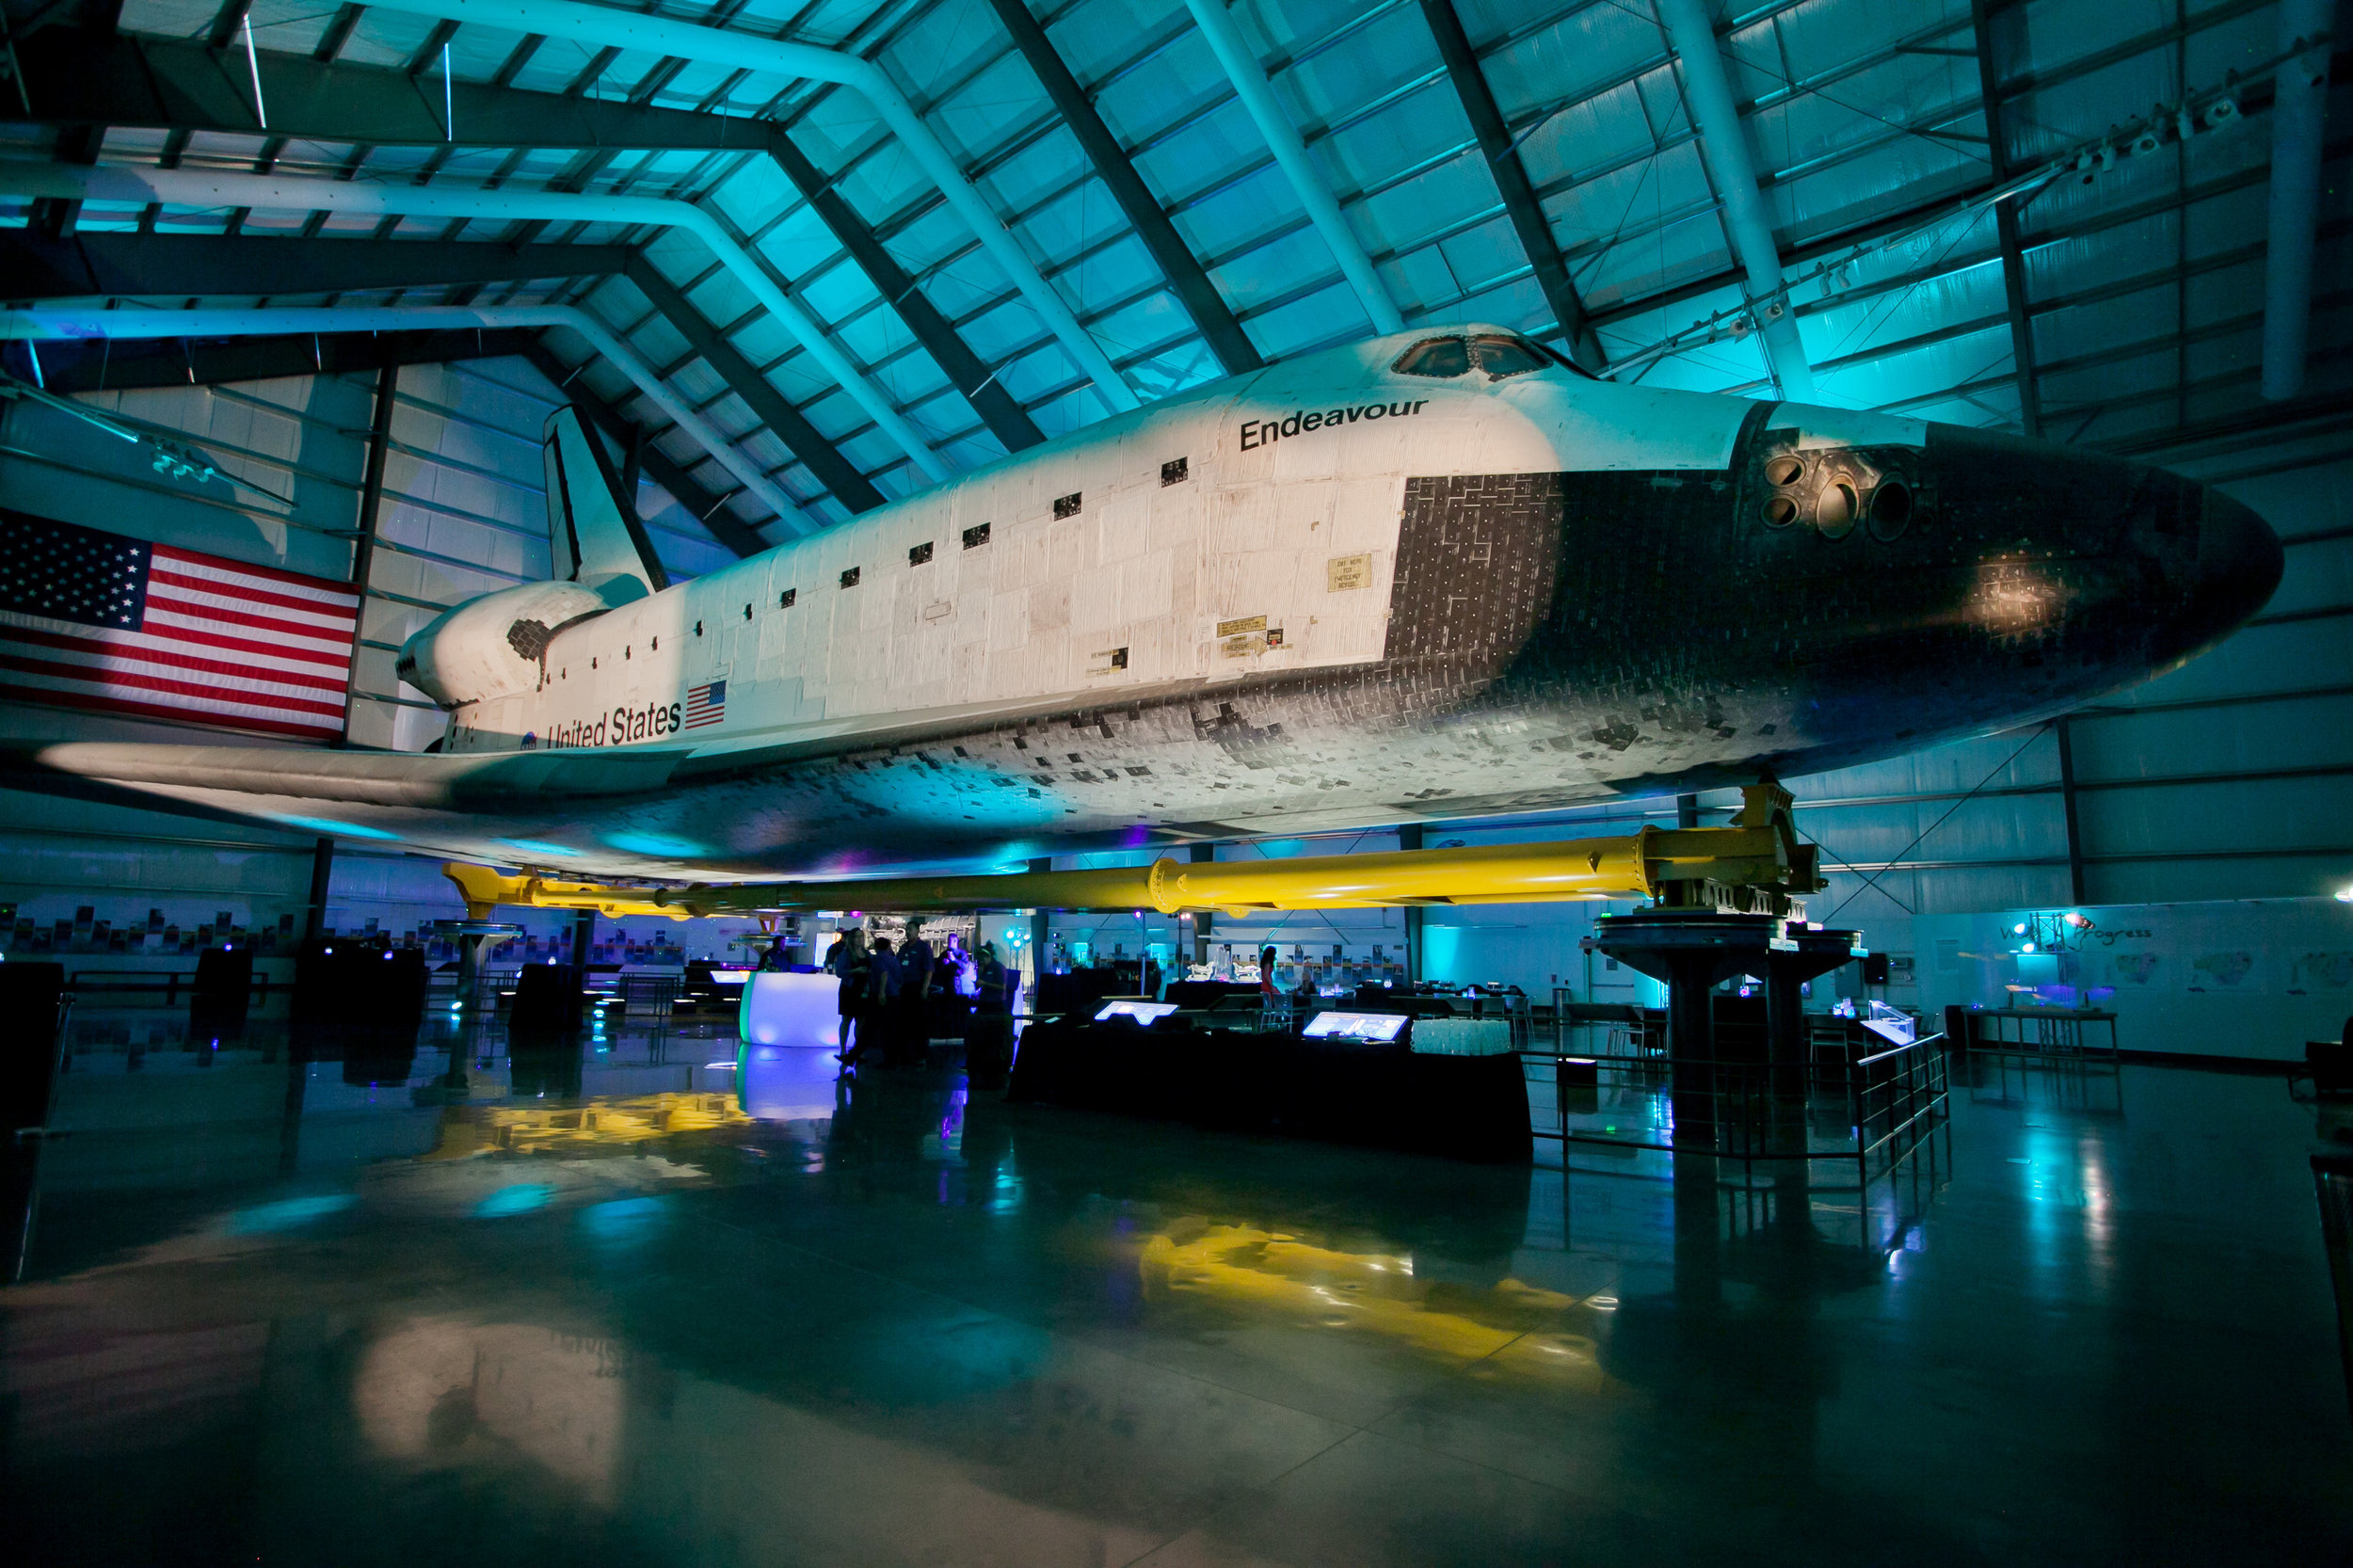 Endeavor-Shuttle-11.jpg